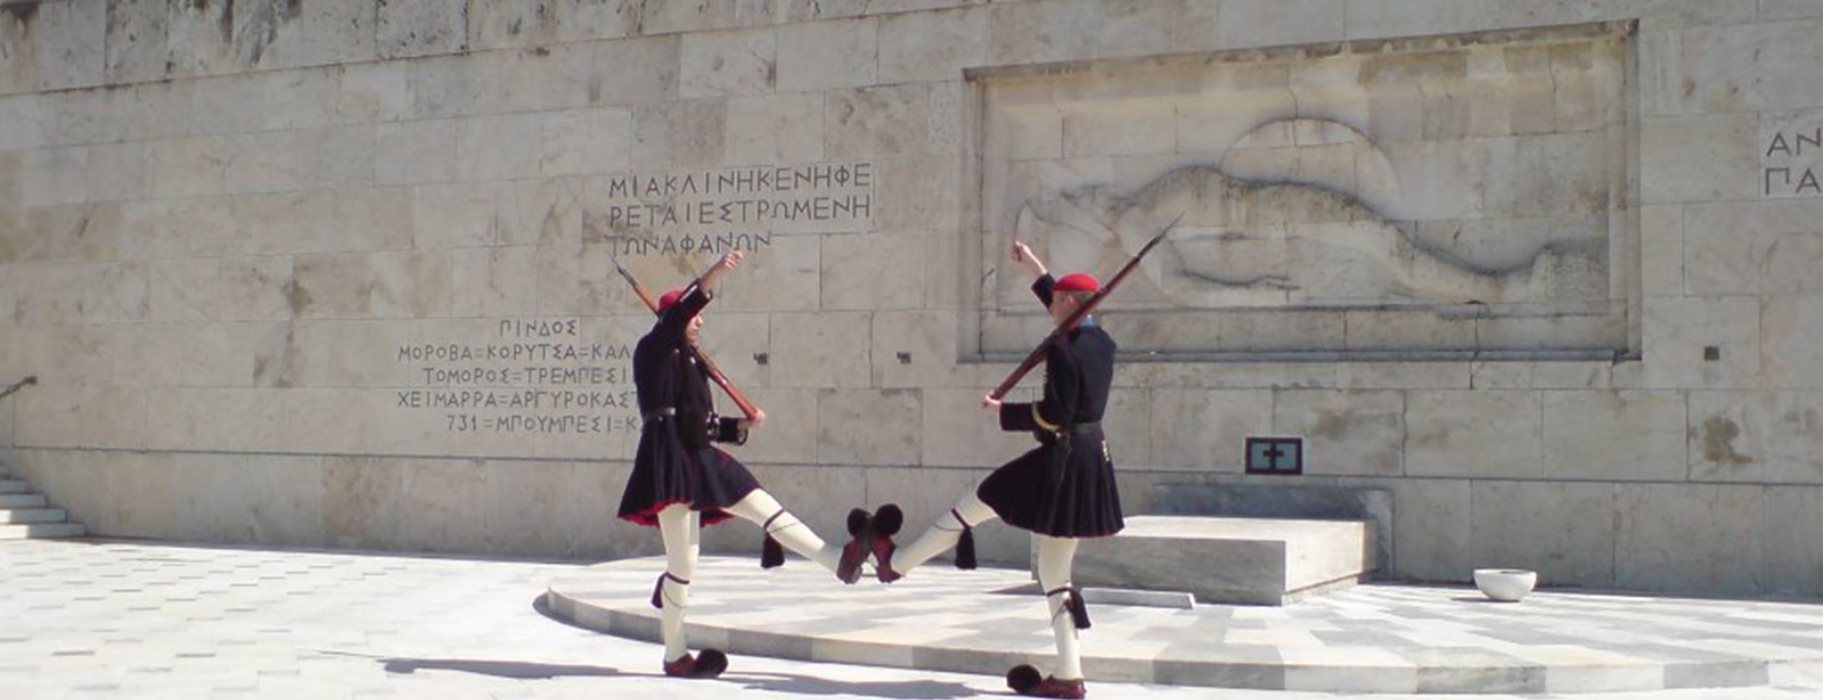 Ο Δήμος Αθηναίων κατασκεύασε ράμπα για ΑμεΑ στο Μνημείο του Άγνωστου Στρατιώτη